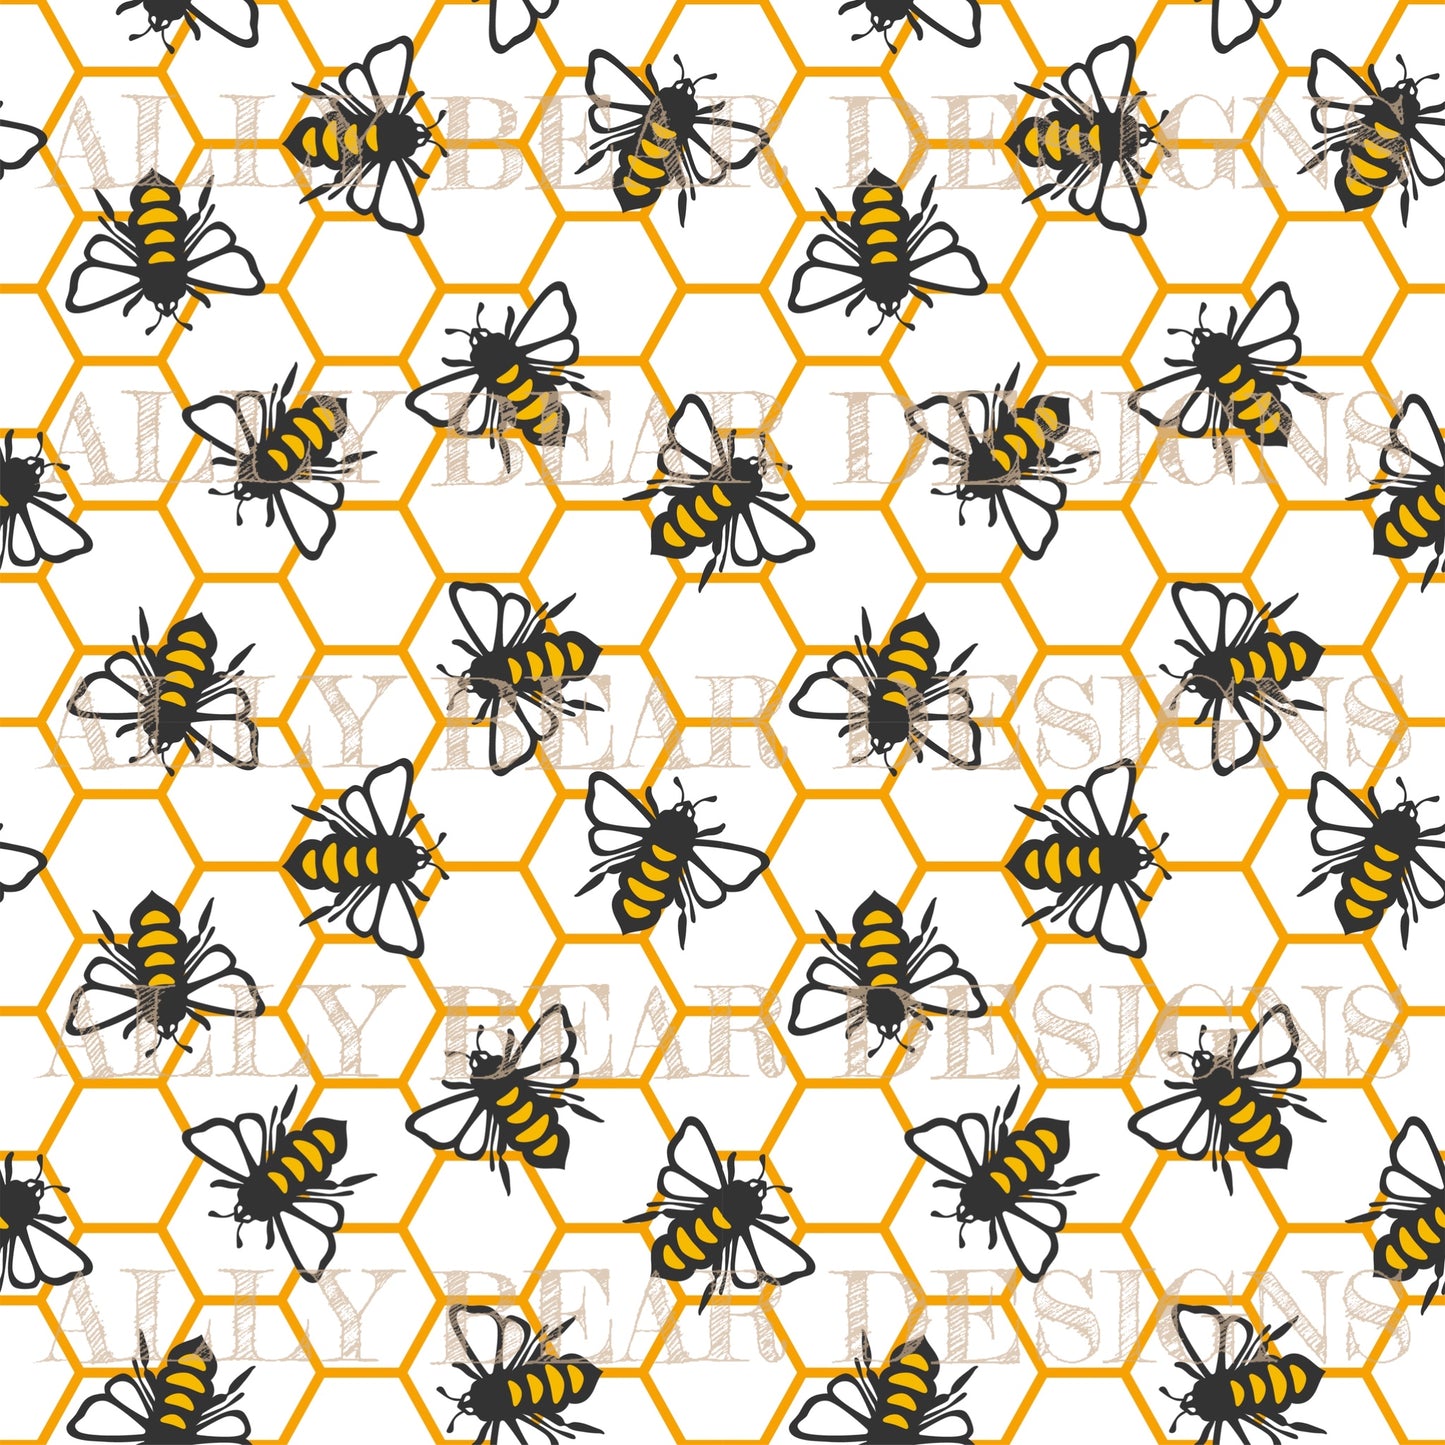 Honeycomb - White